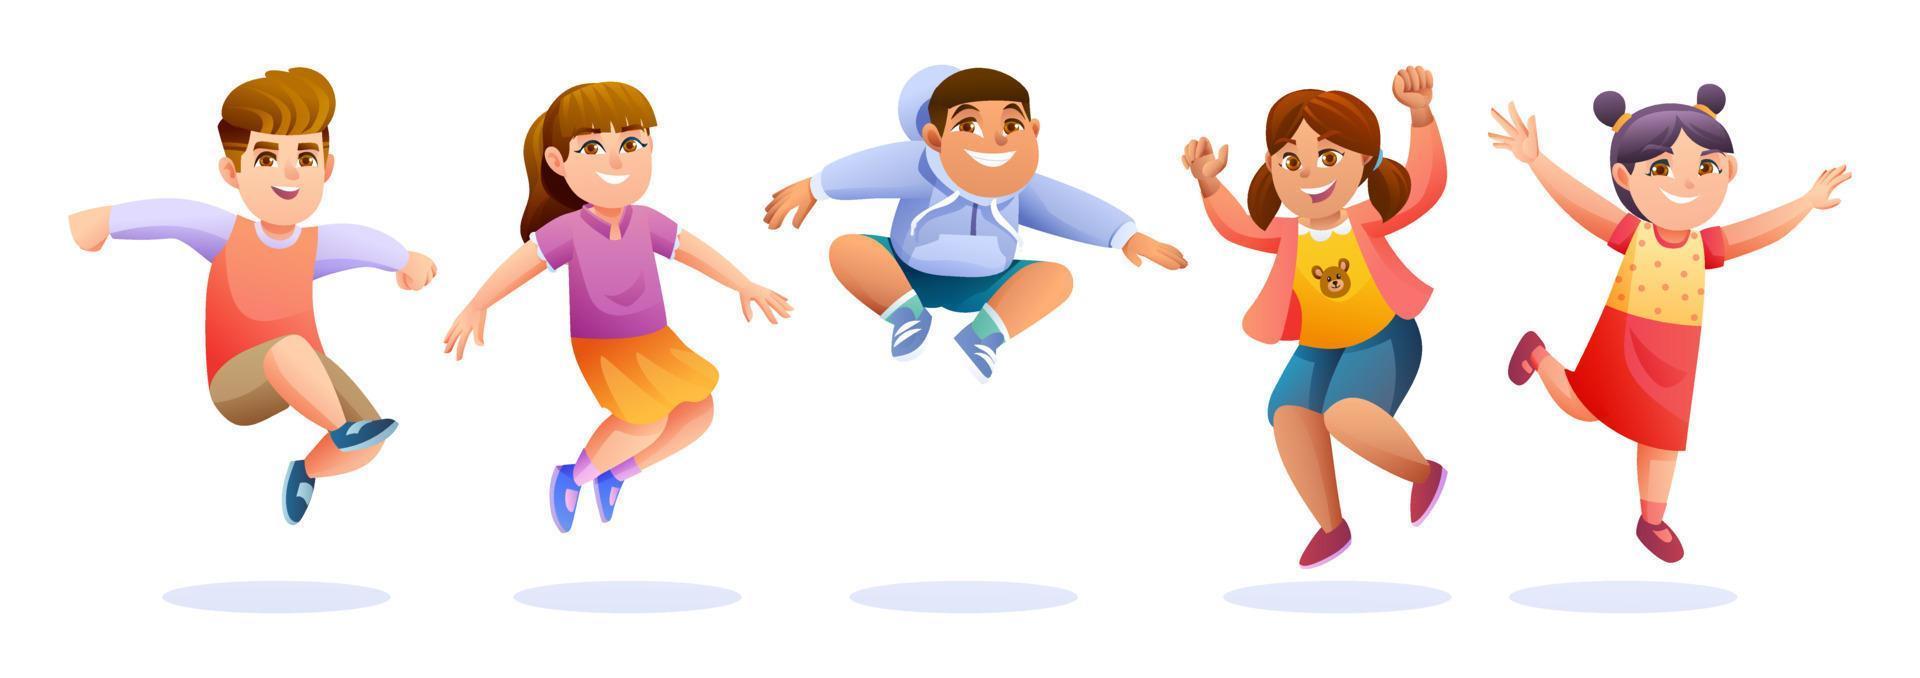 enfants heureux sautant ensemble illustration vectorielle vecteur